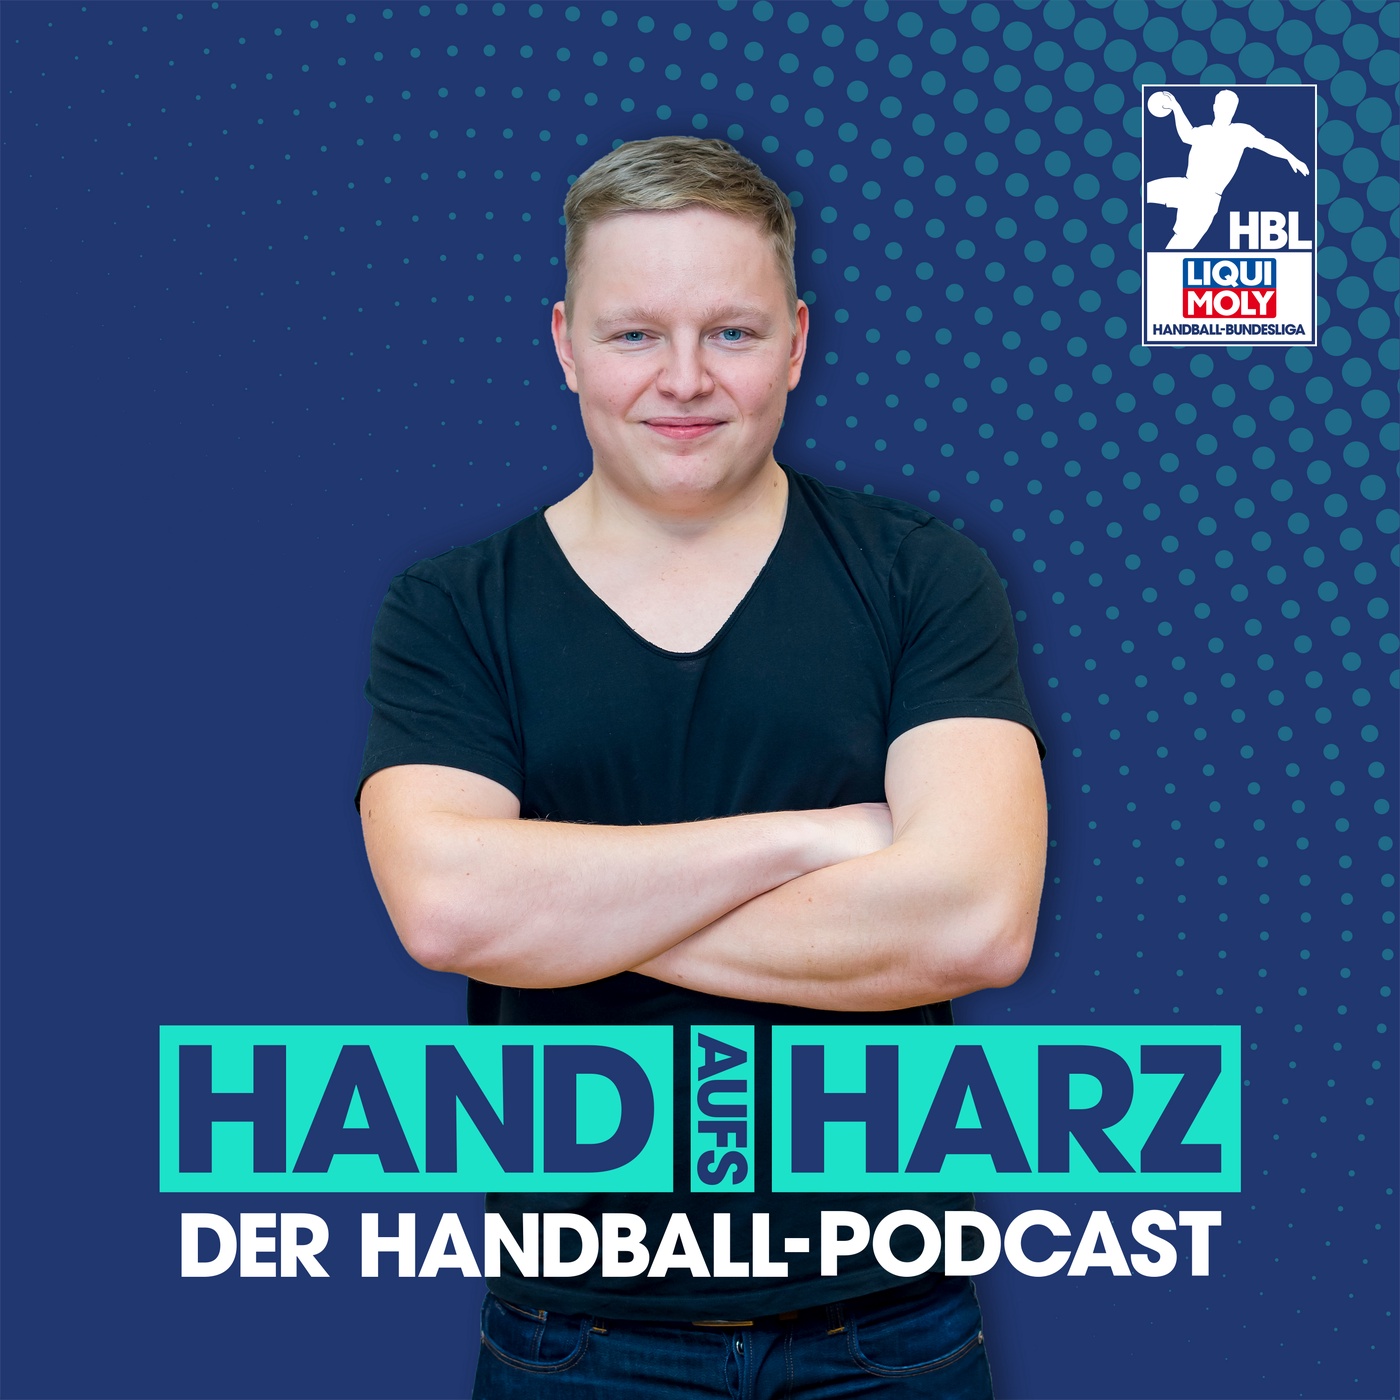 Hand aufs Harz - Der Handball-Podcast